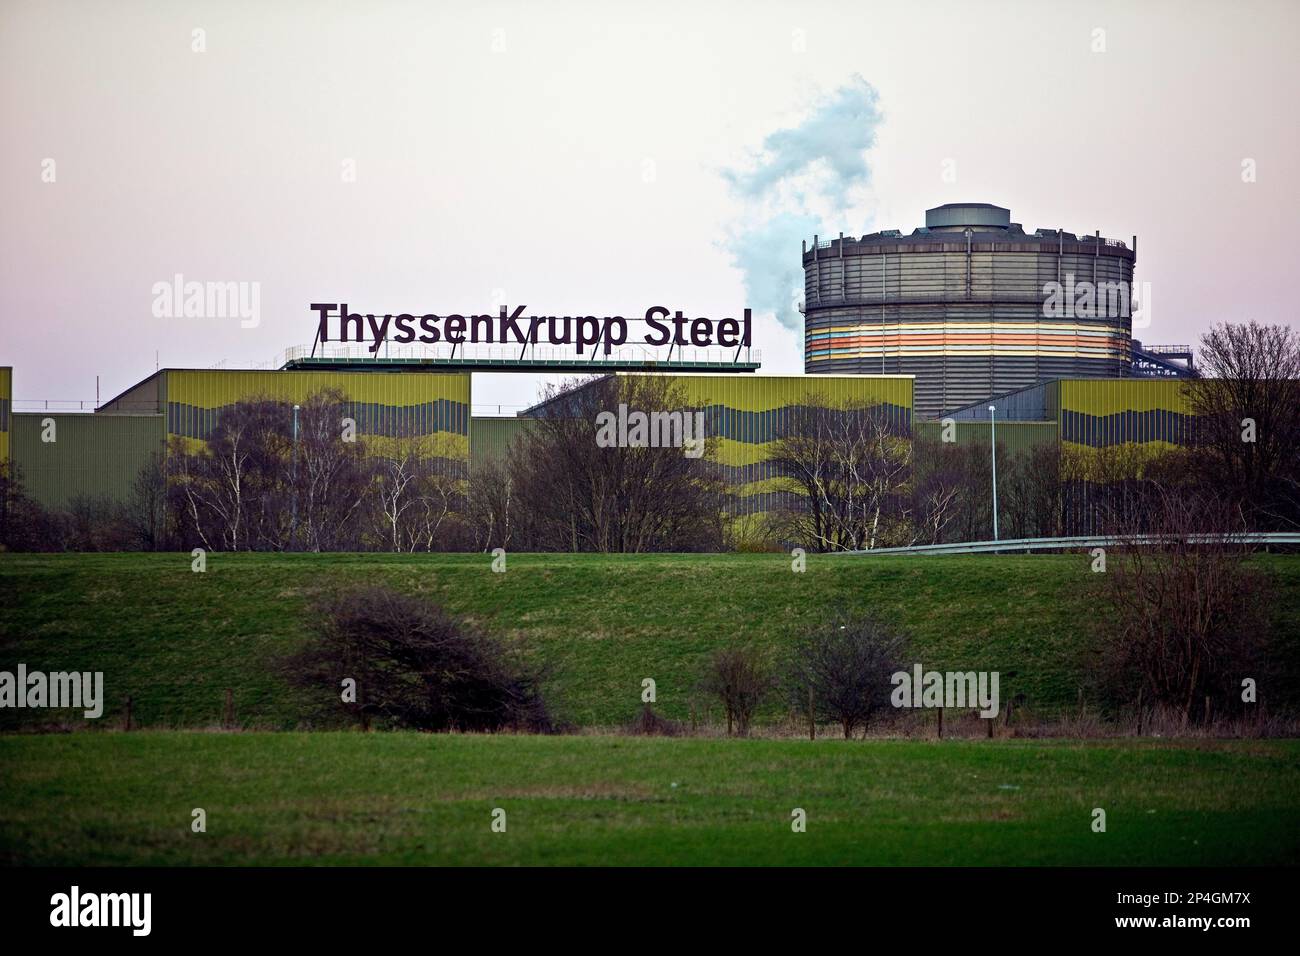 Ligne de découpe à bande chaude WSA de ThyssenKrupp Steel à Beeckerwerth, Duisburg, région de la Ruhr, Rhénanie-du-Nord-Westphalie, Allemagne Banque D'Images